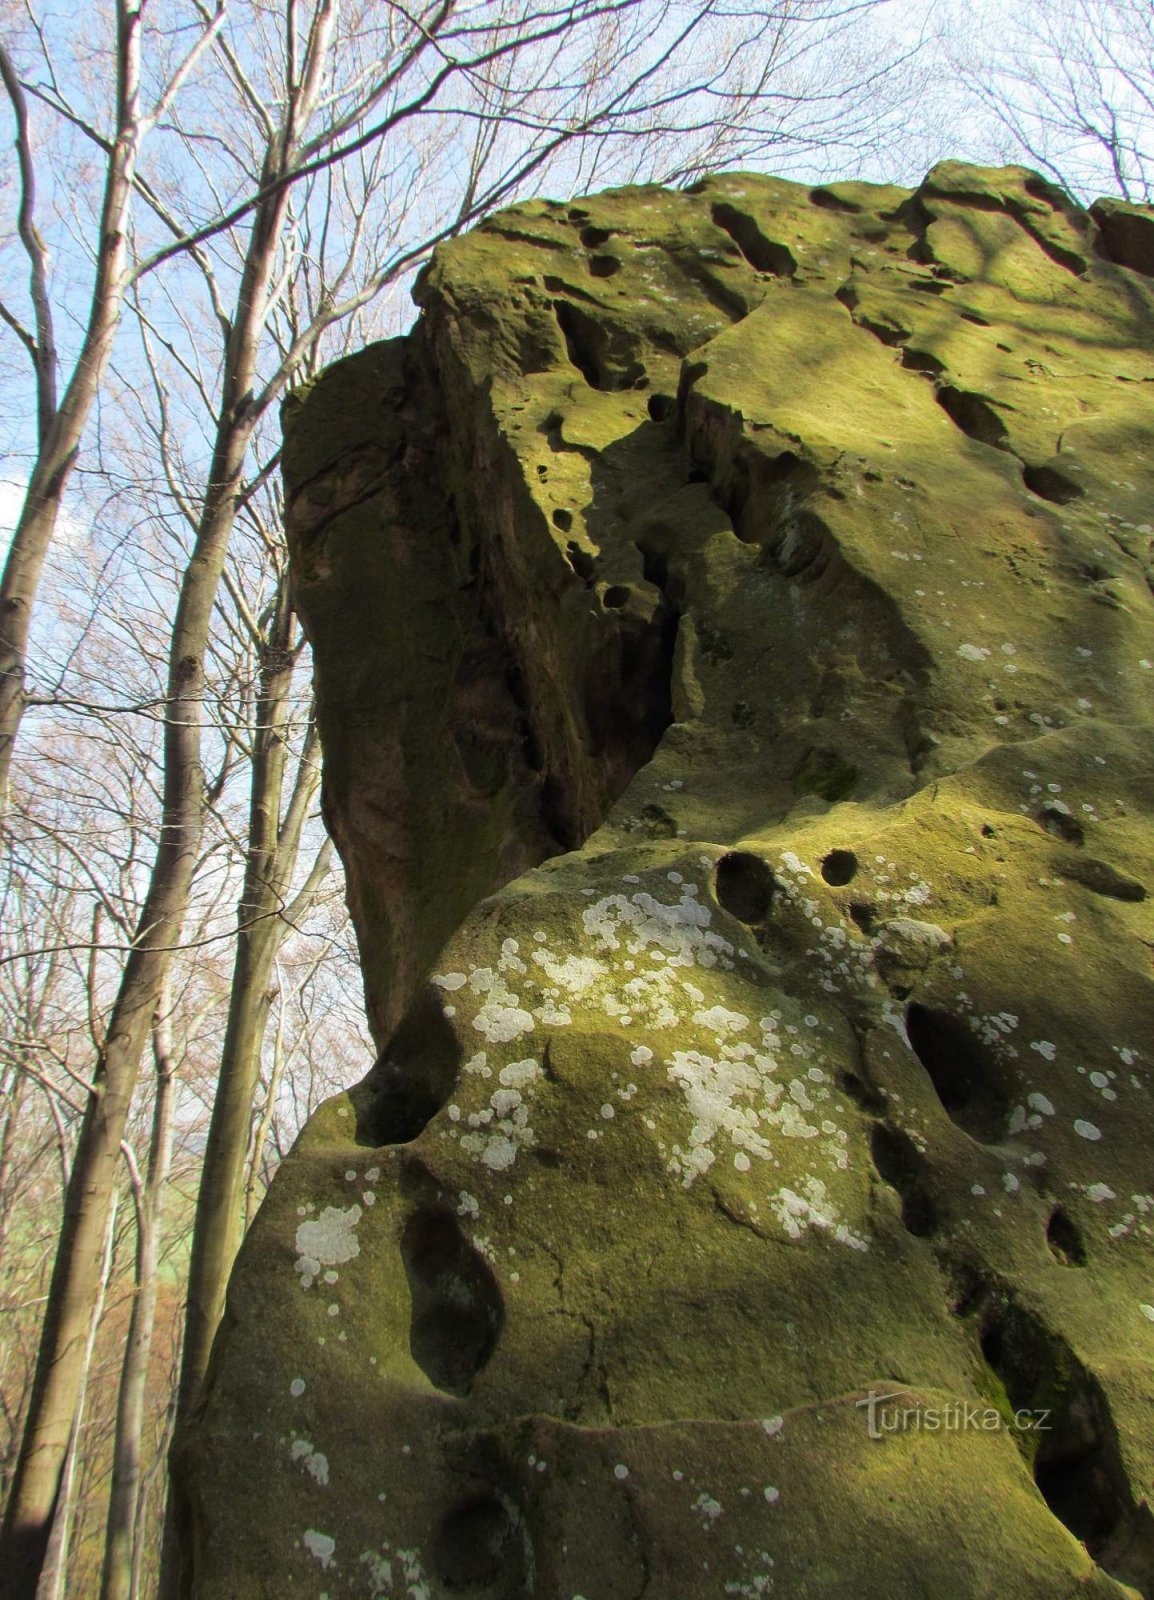 Les roches les plus poreuses des collines de Vizovice